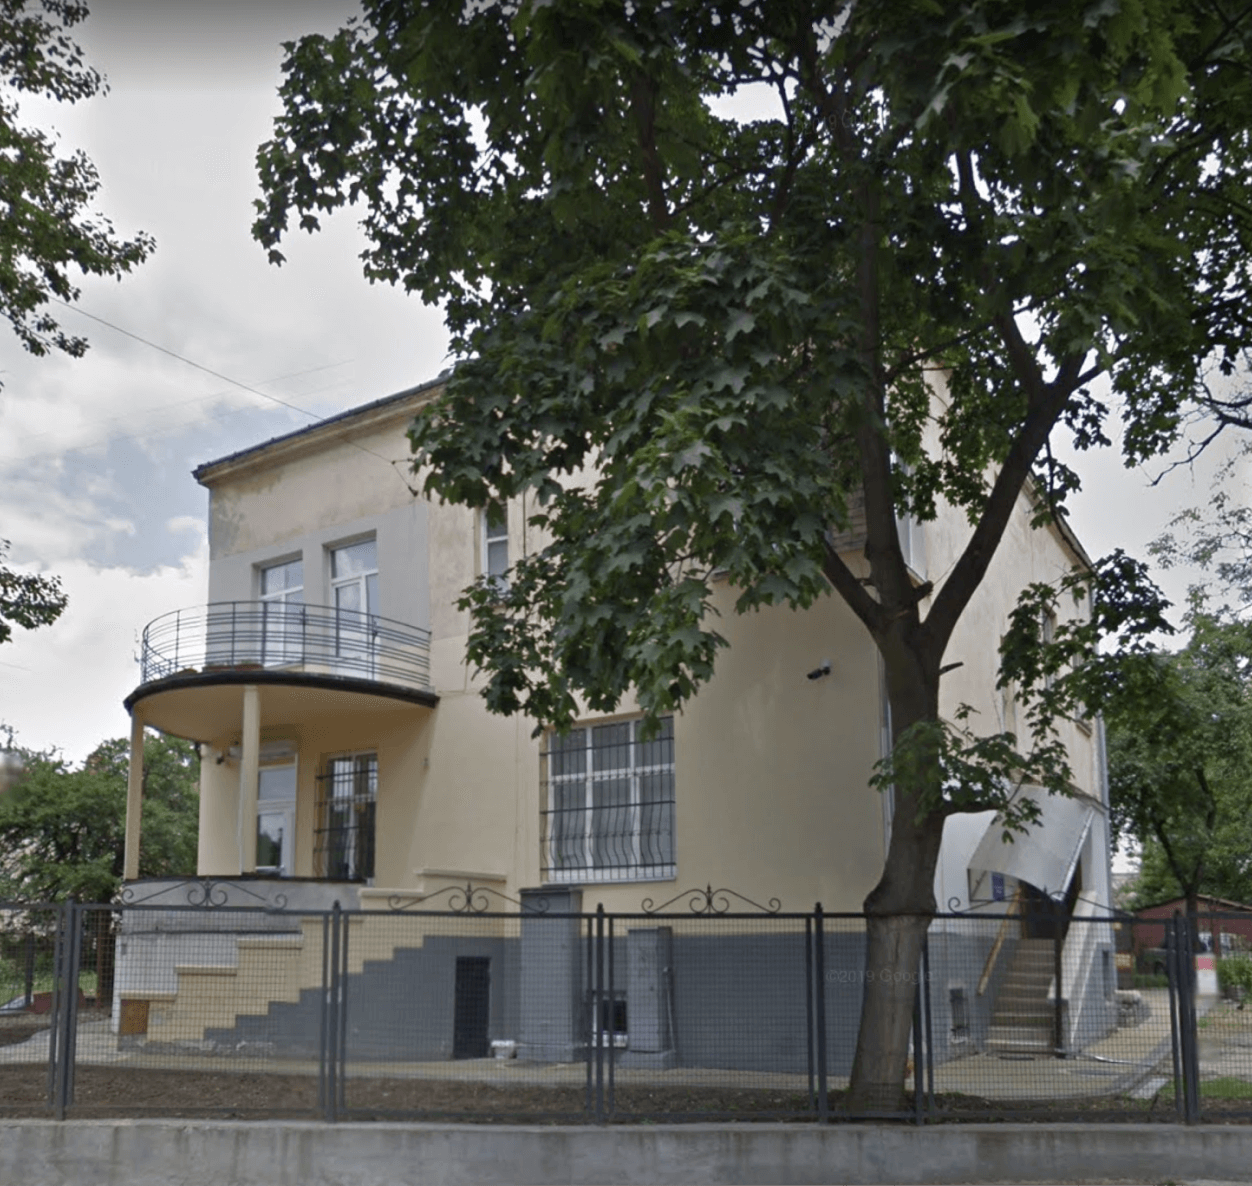 Shelter in Lviv